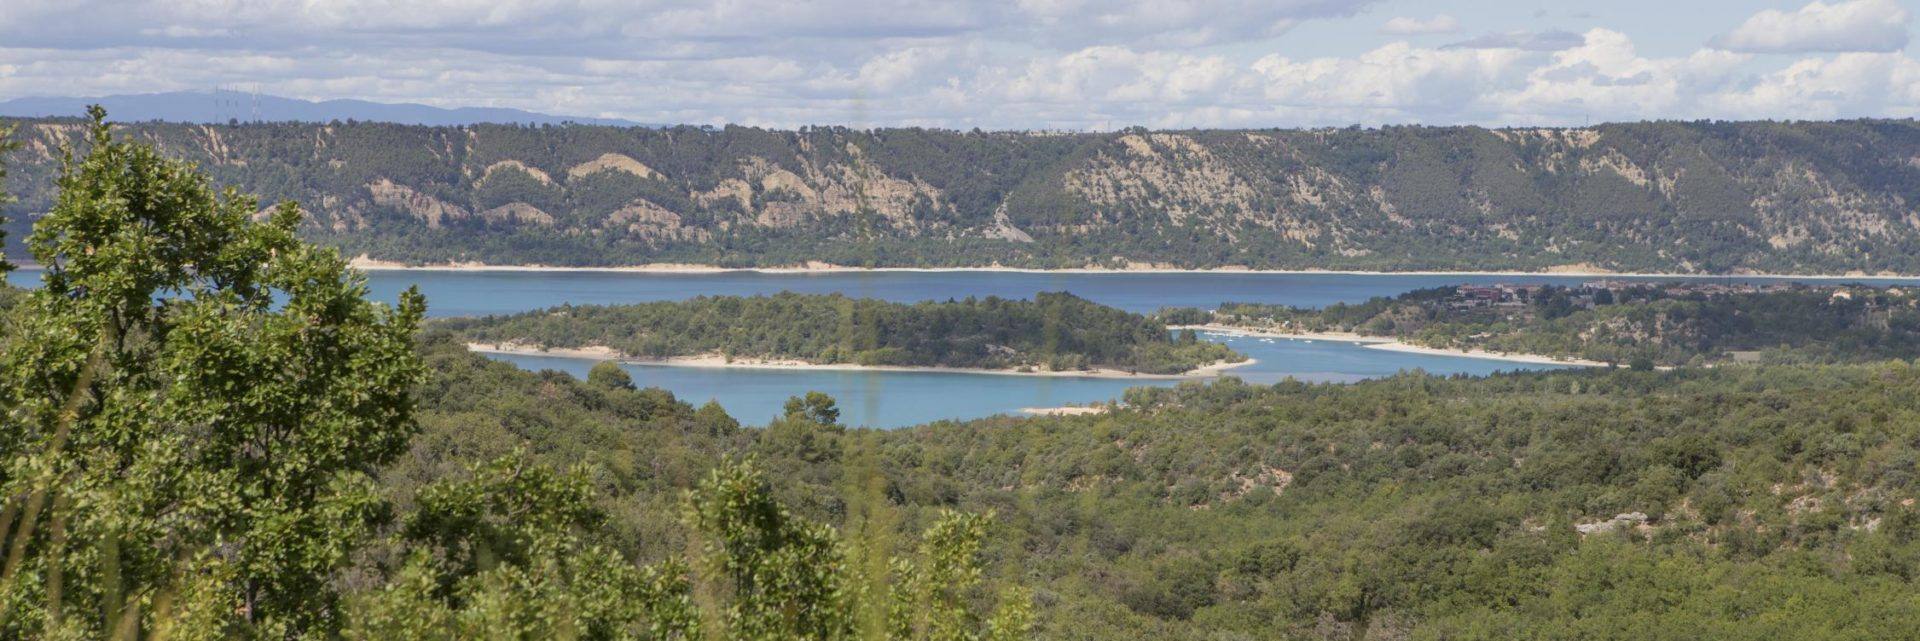 Le Verdon - Lac de Sainte-Croix